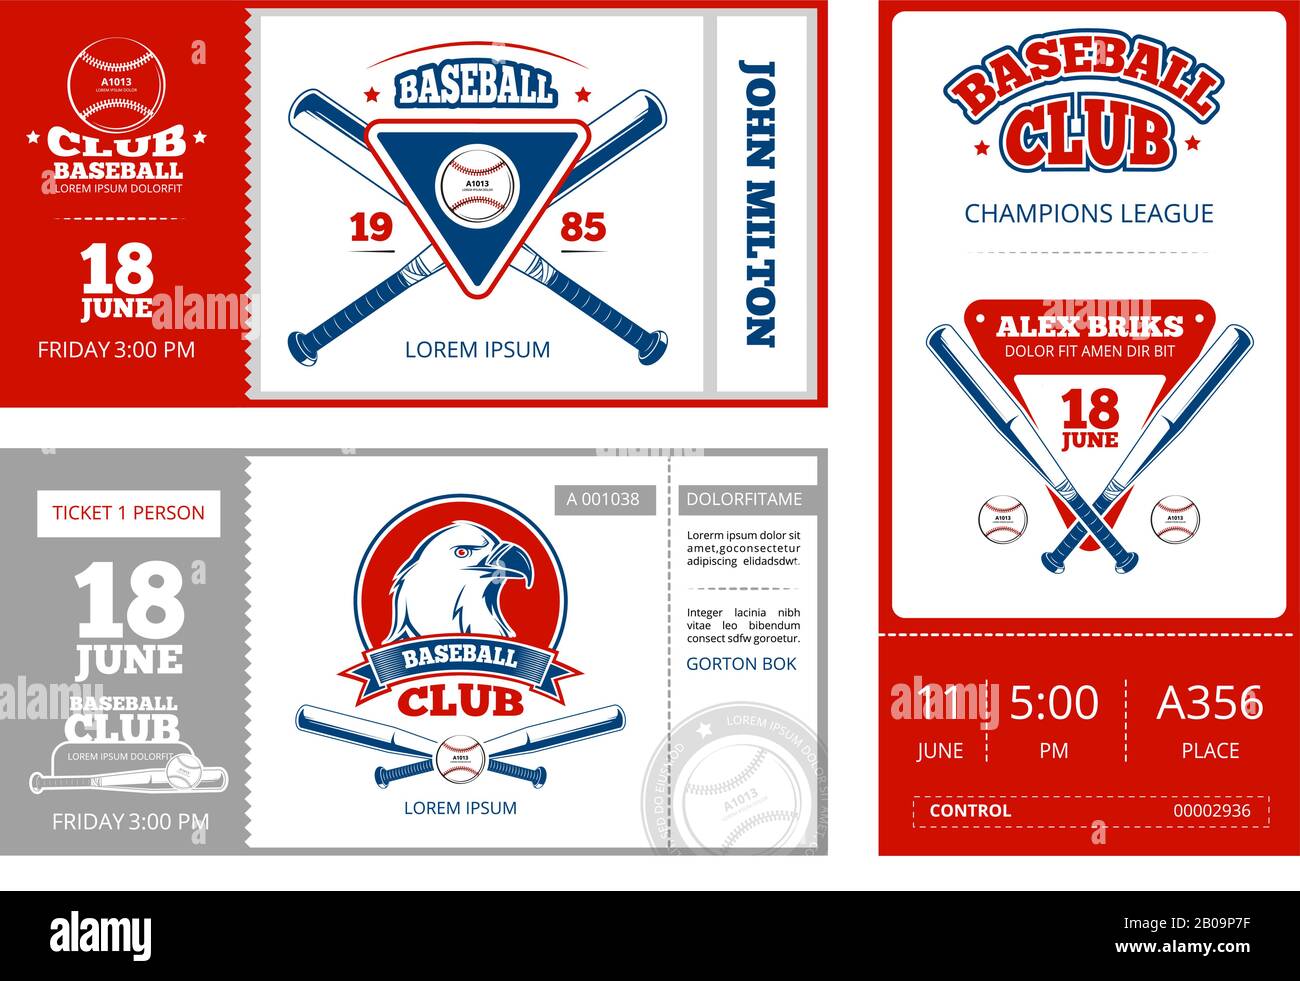 Biglietto per lo sport di baseball con emblemi vintage della squadra di baseball. Modello di illustrazione del campionato di biglietti da baseball Illustrazione Vettoriale